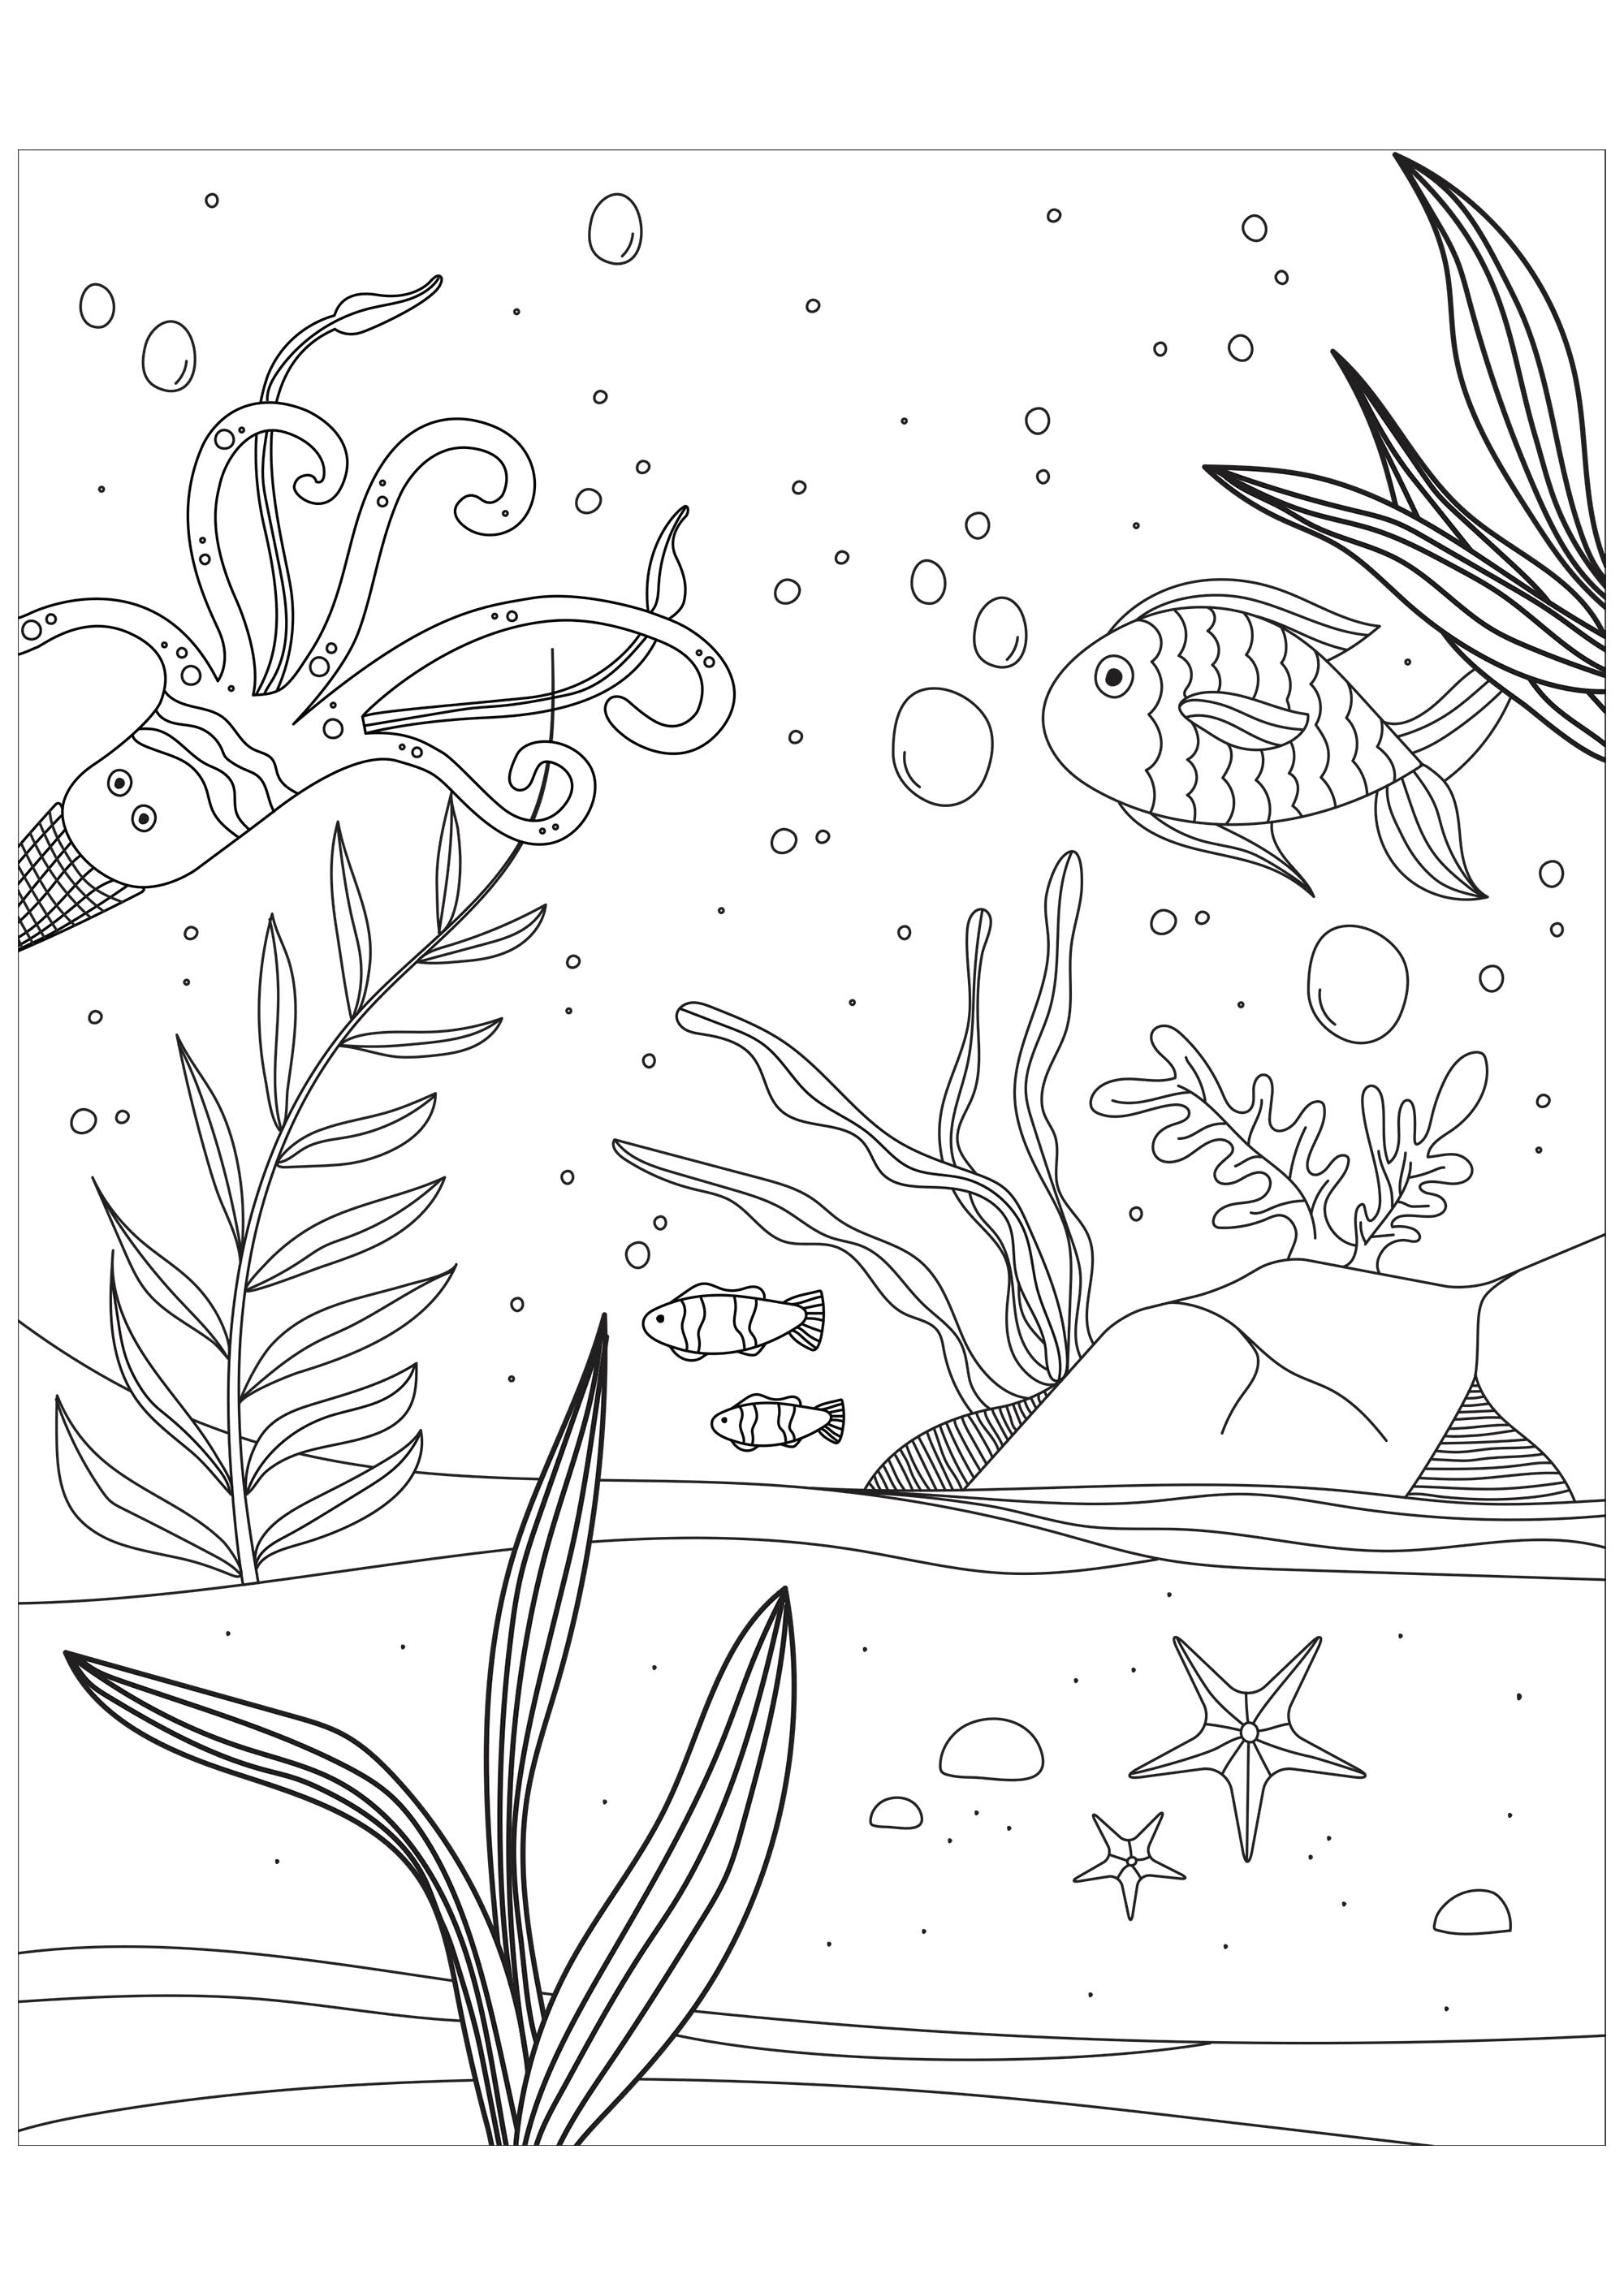 Pesci, polpi e stelle marine in fondo al mare. Prodotto dal sito regali.com.